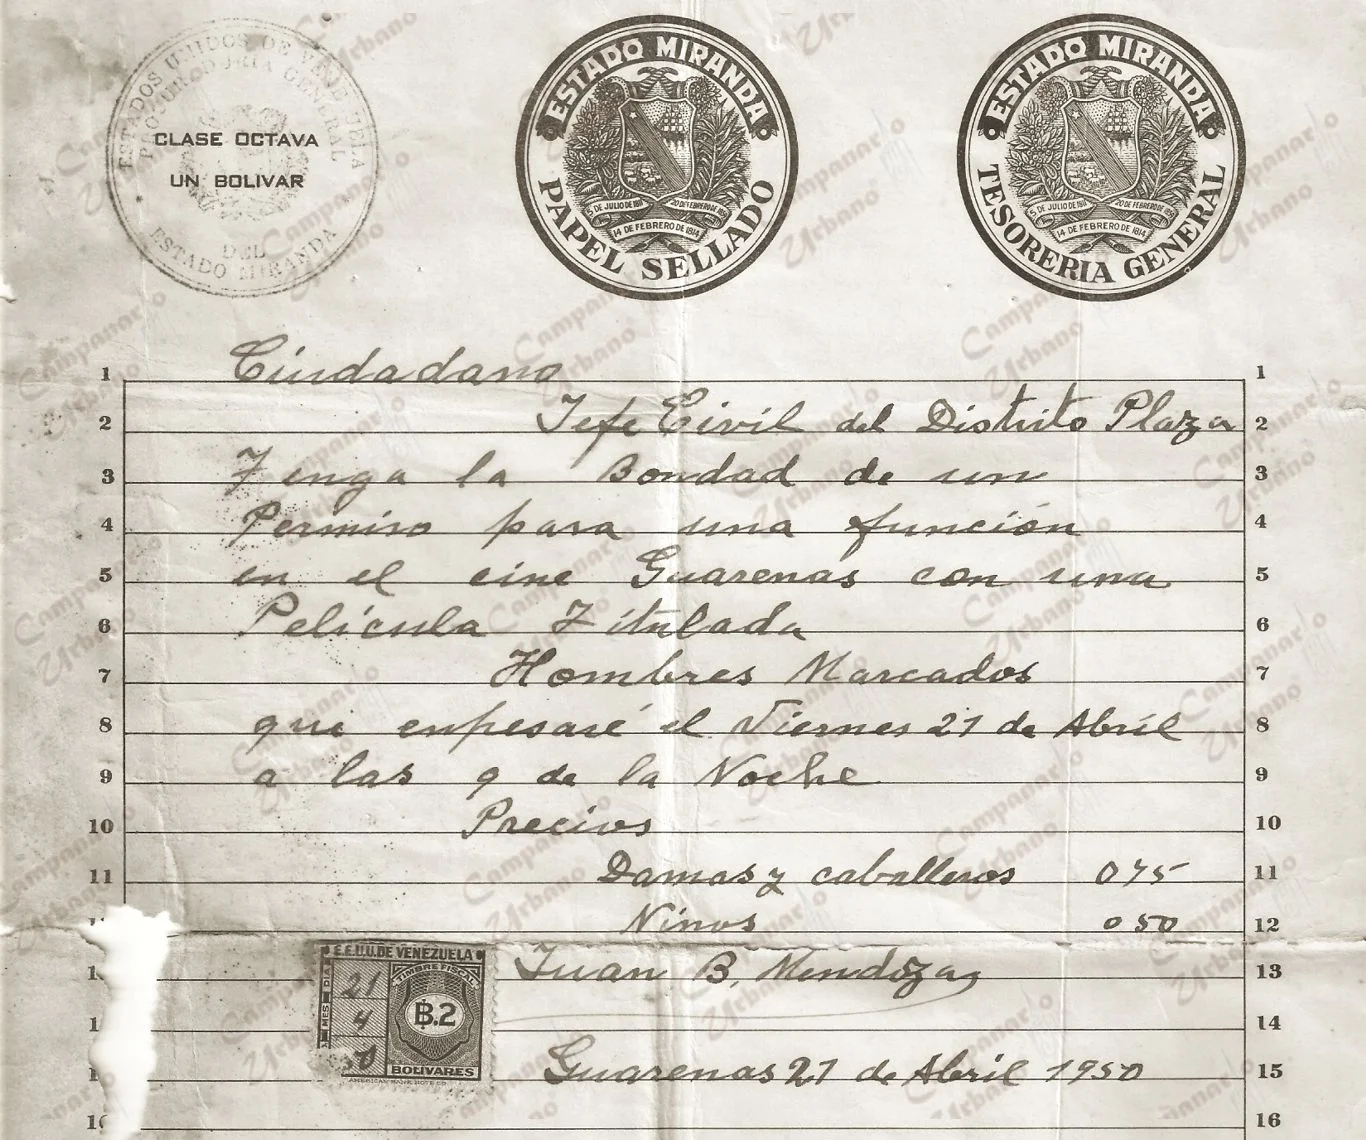 Cine Guarenas, permiso de proyección. Puño y letra de su propietario, Señor Juan Bautista Mendoza, año 1950